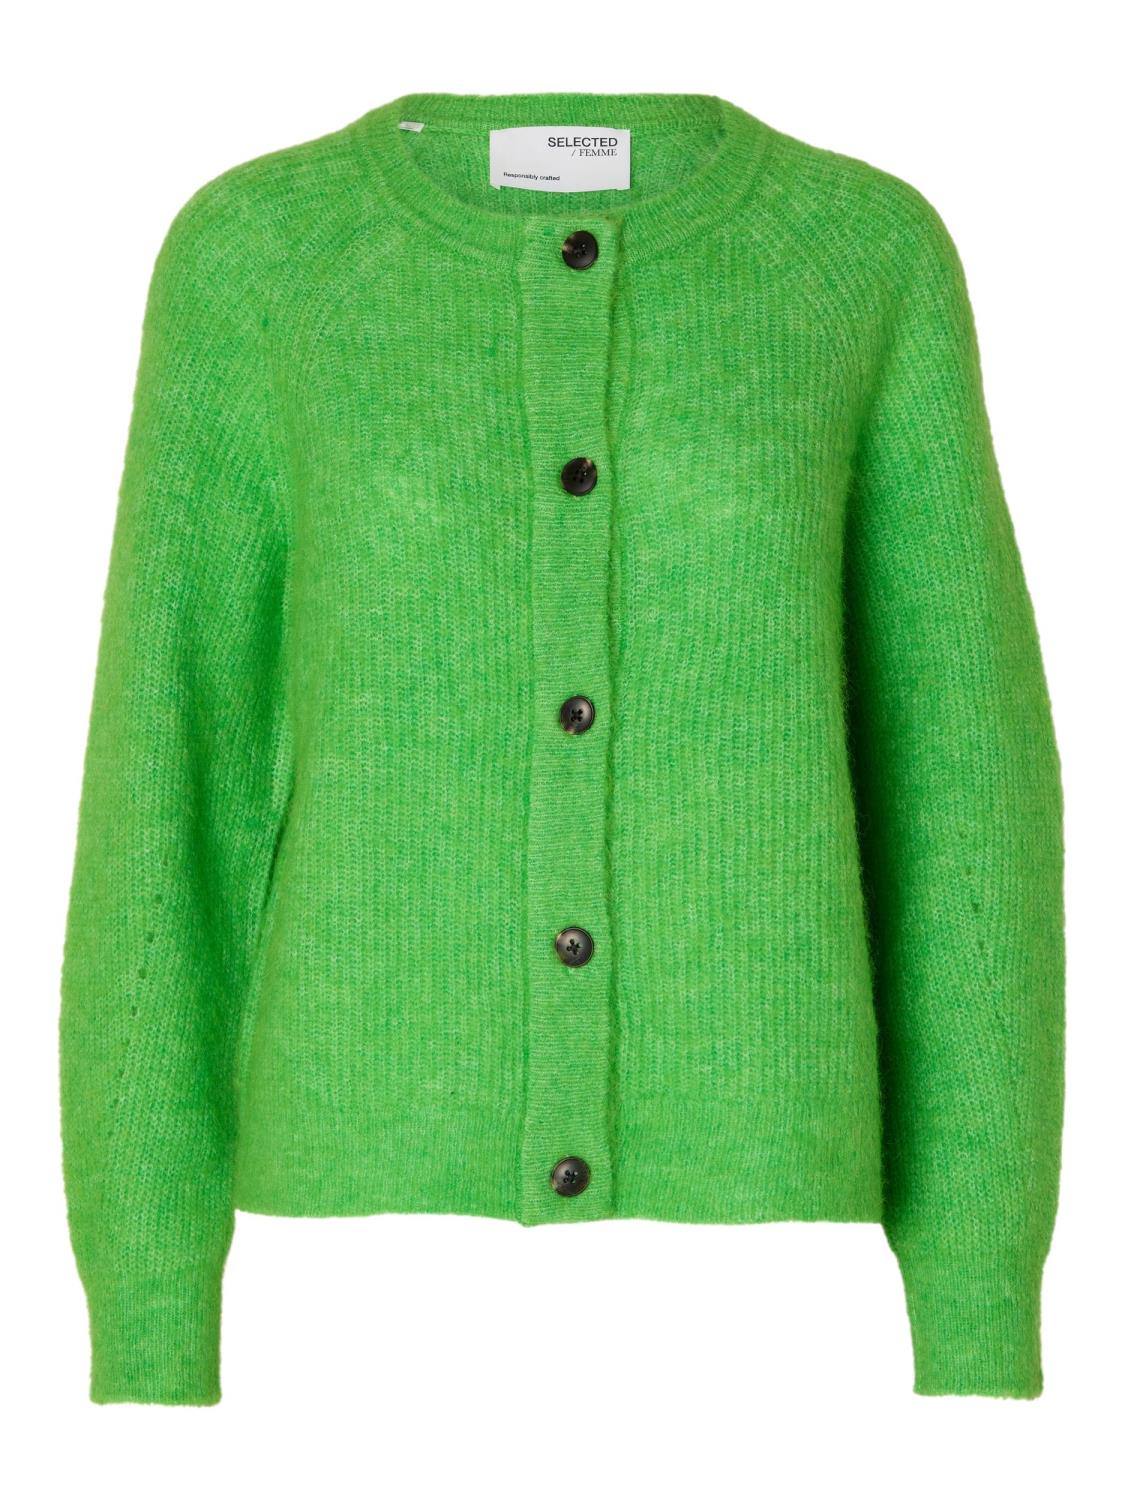 SLFLULU ls knit short cardigan Classic Green